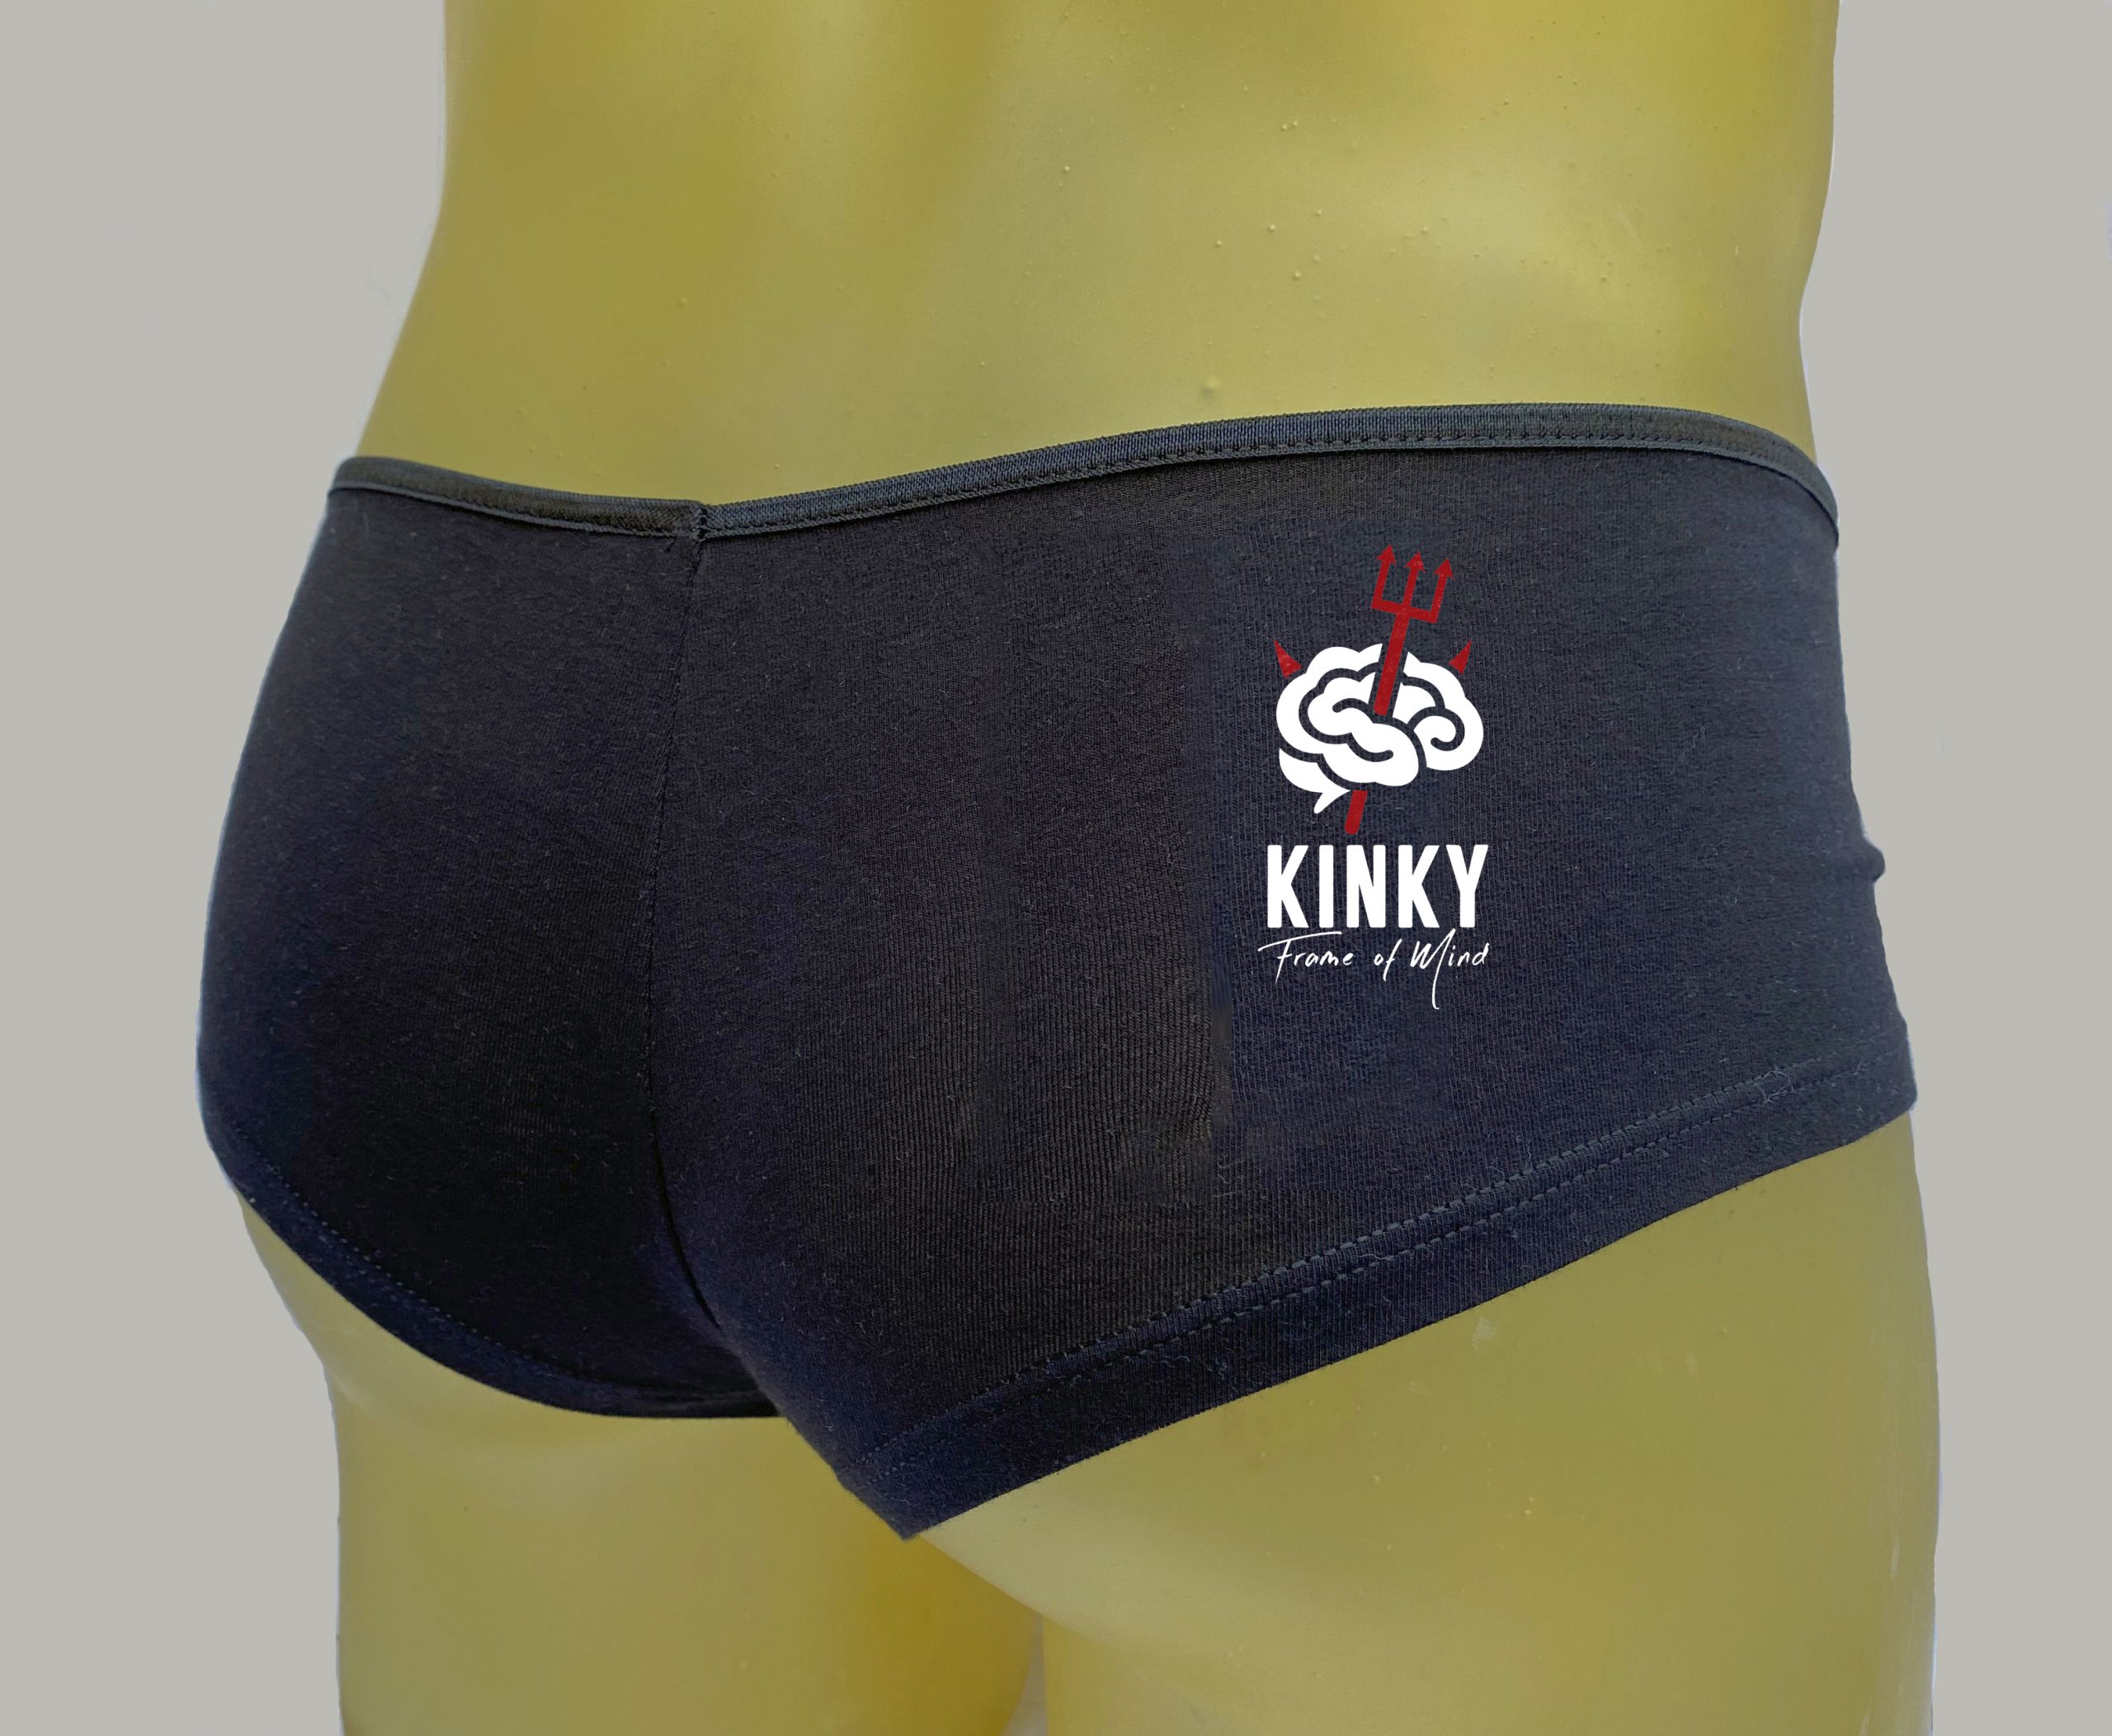 Kinky Frame of Mind Devilish Black Plus Size Booty Shorts